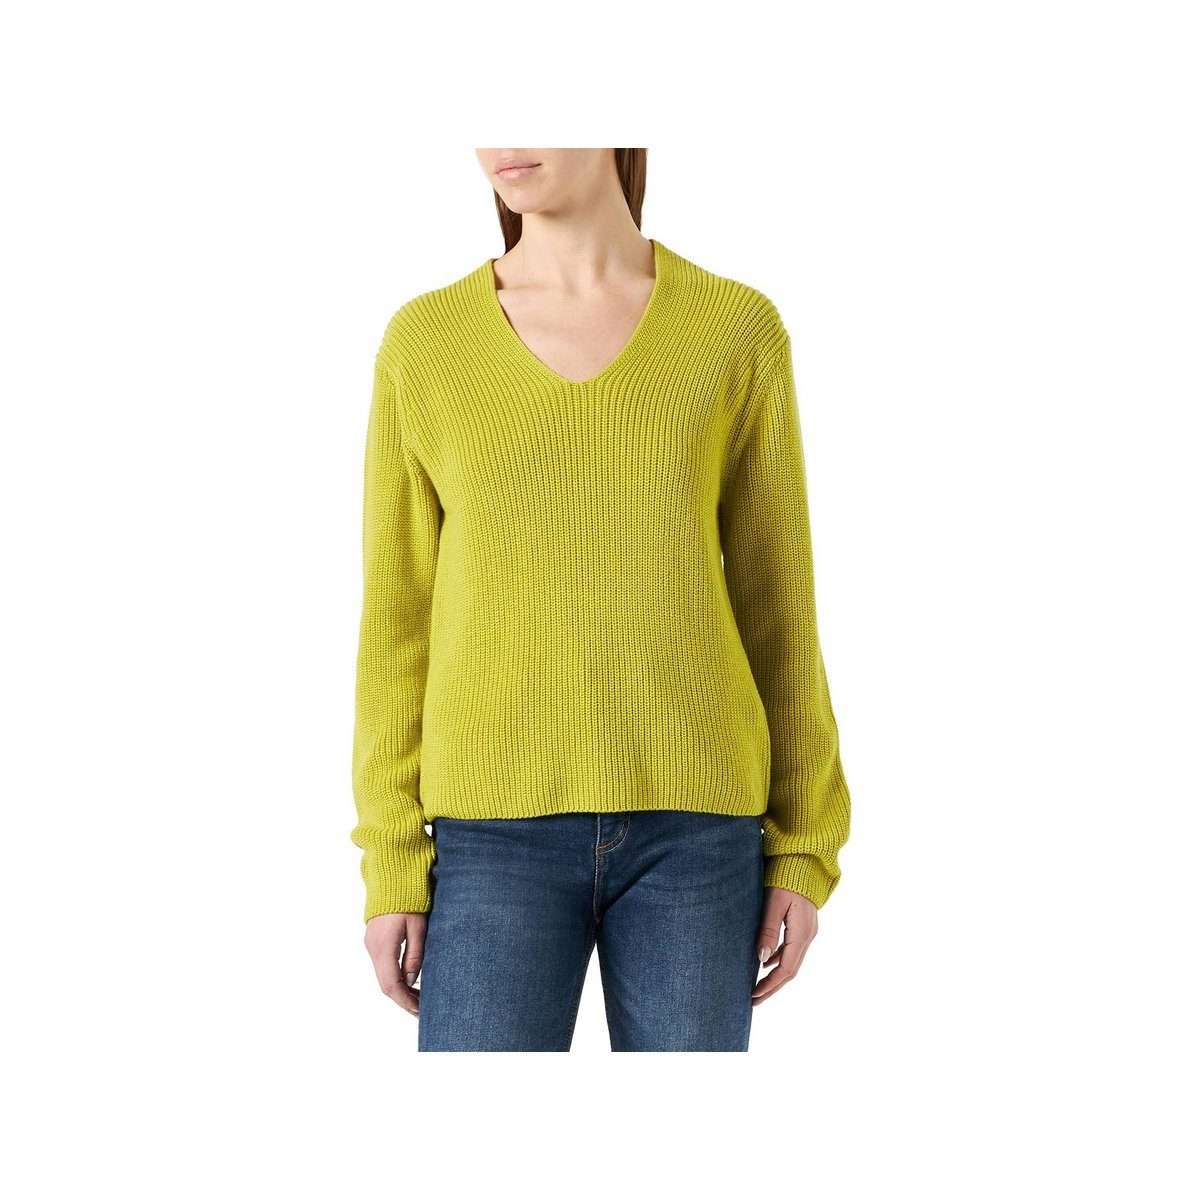 Длинный свитер светло-зеленого цвета (1 шт.)